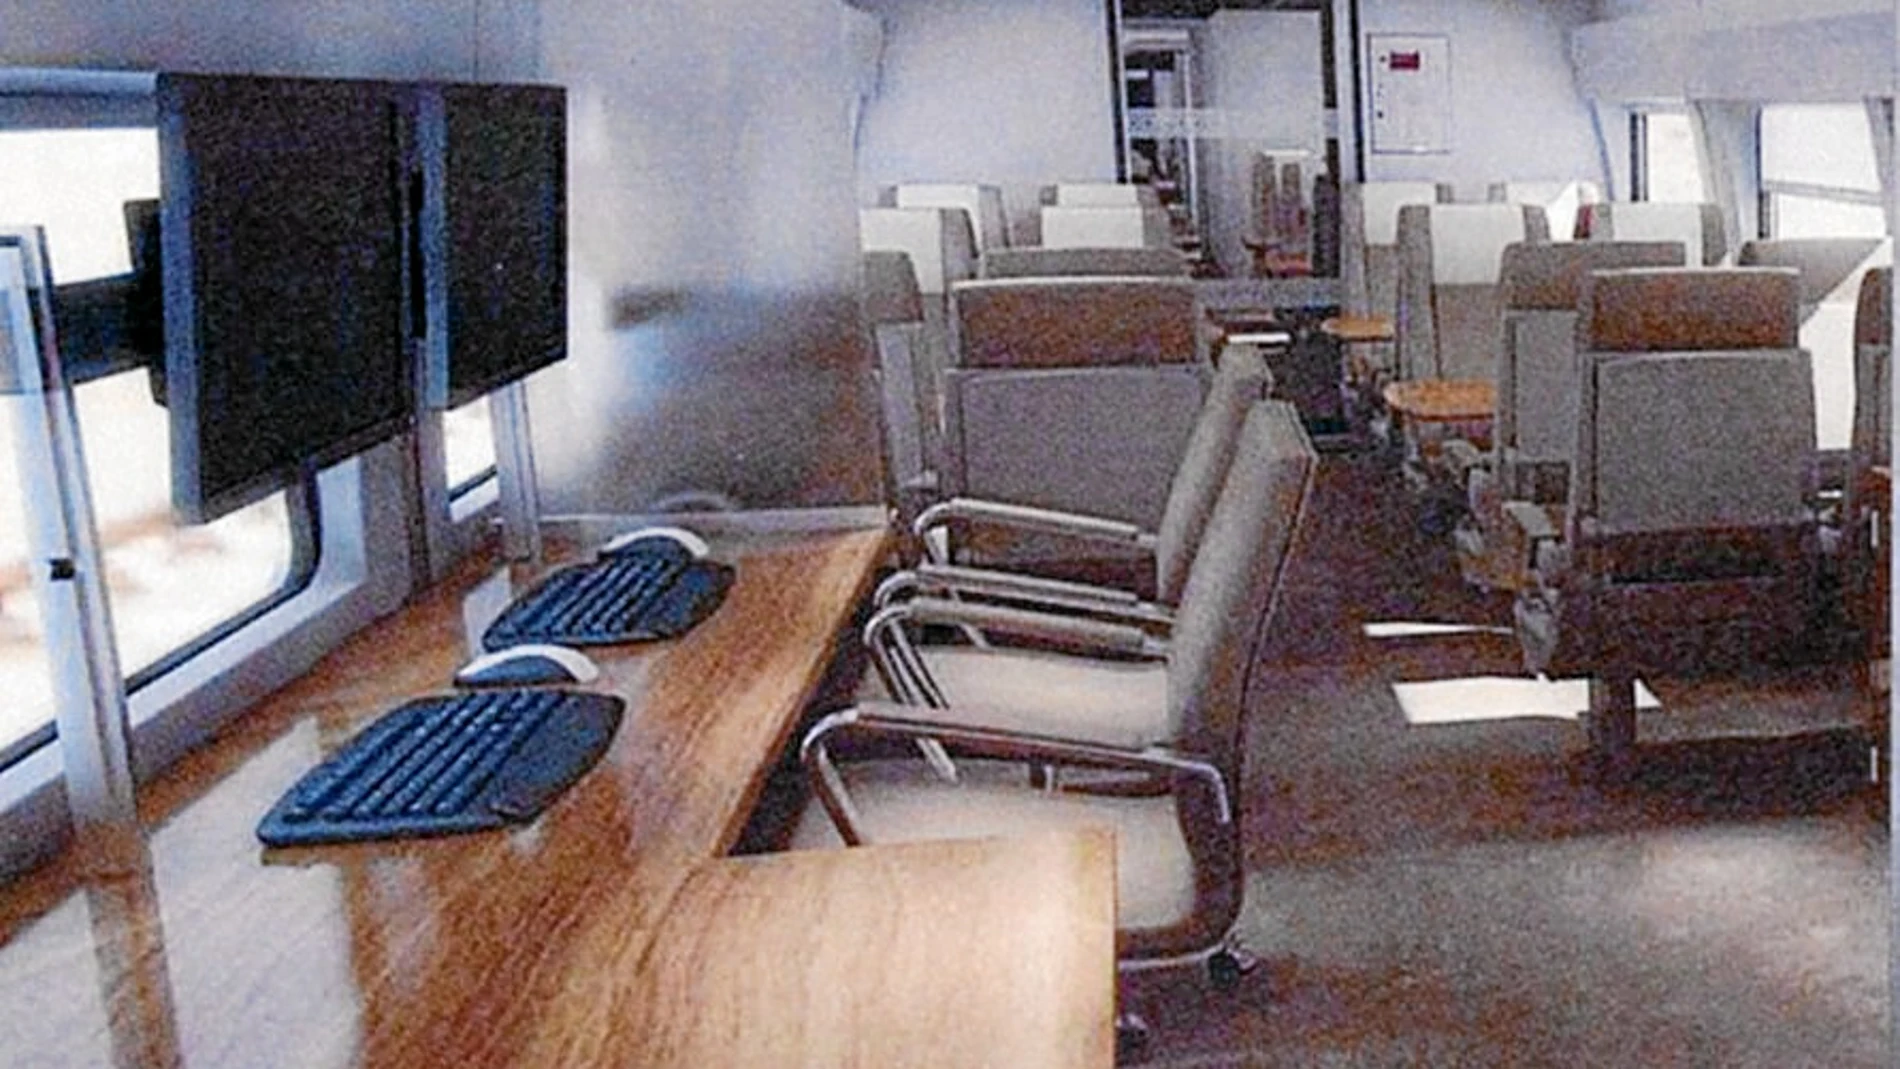 Oficinas del personal que viajará en el tren